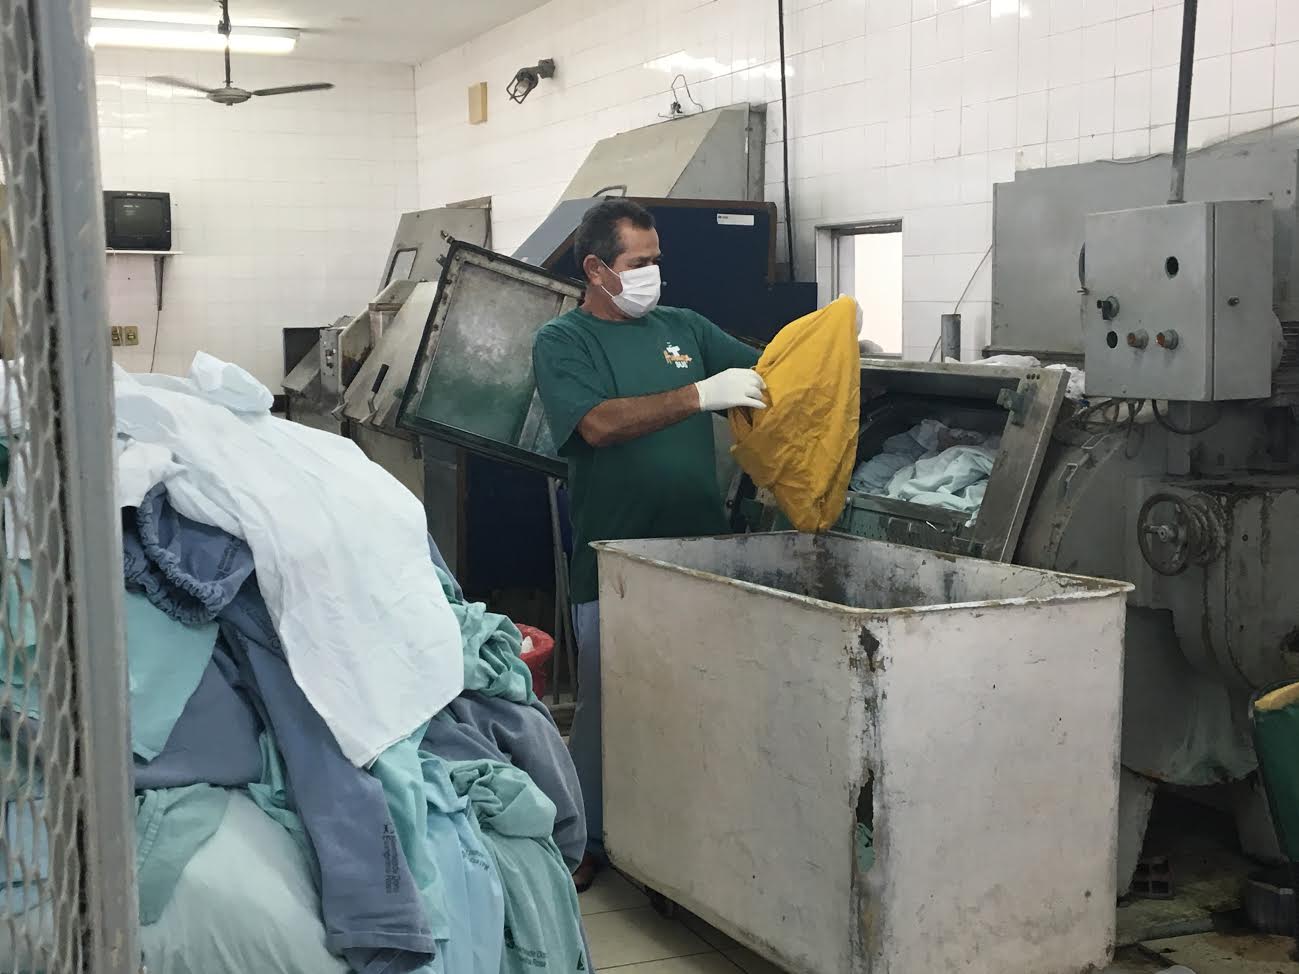 Funcionários da lavanderia da Evangelina Rosa trabalham em condições insalubres